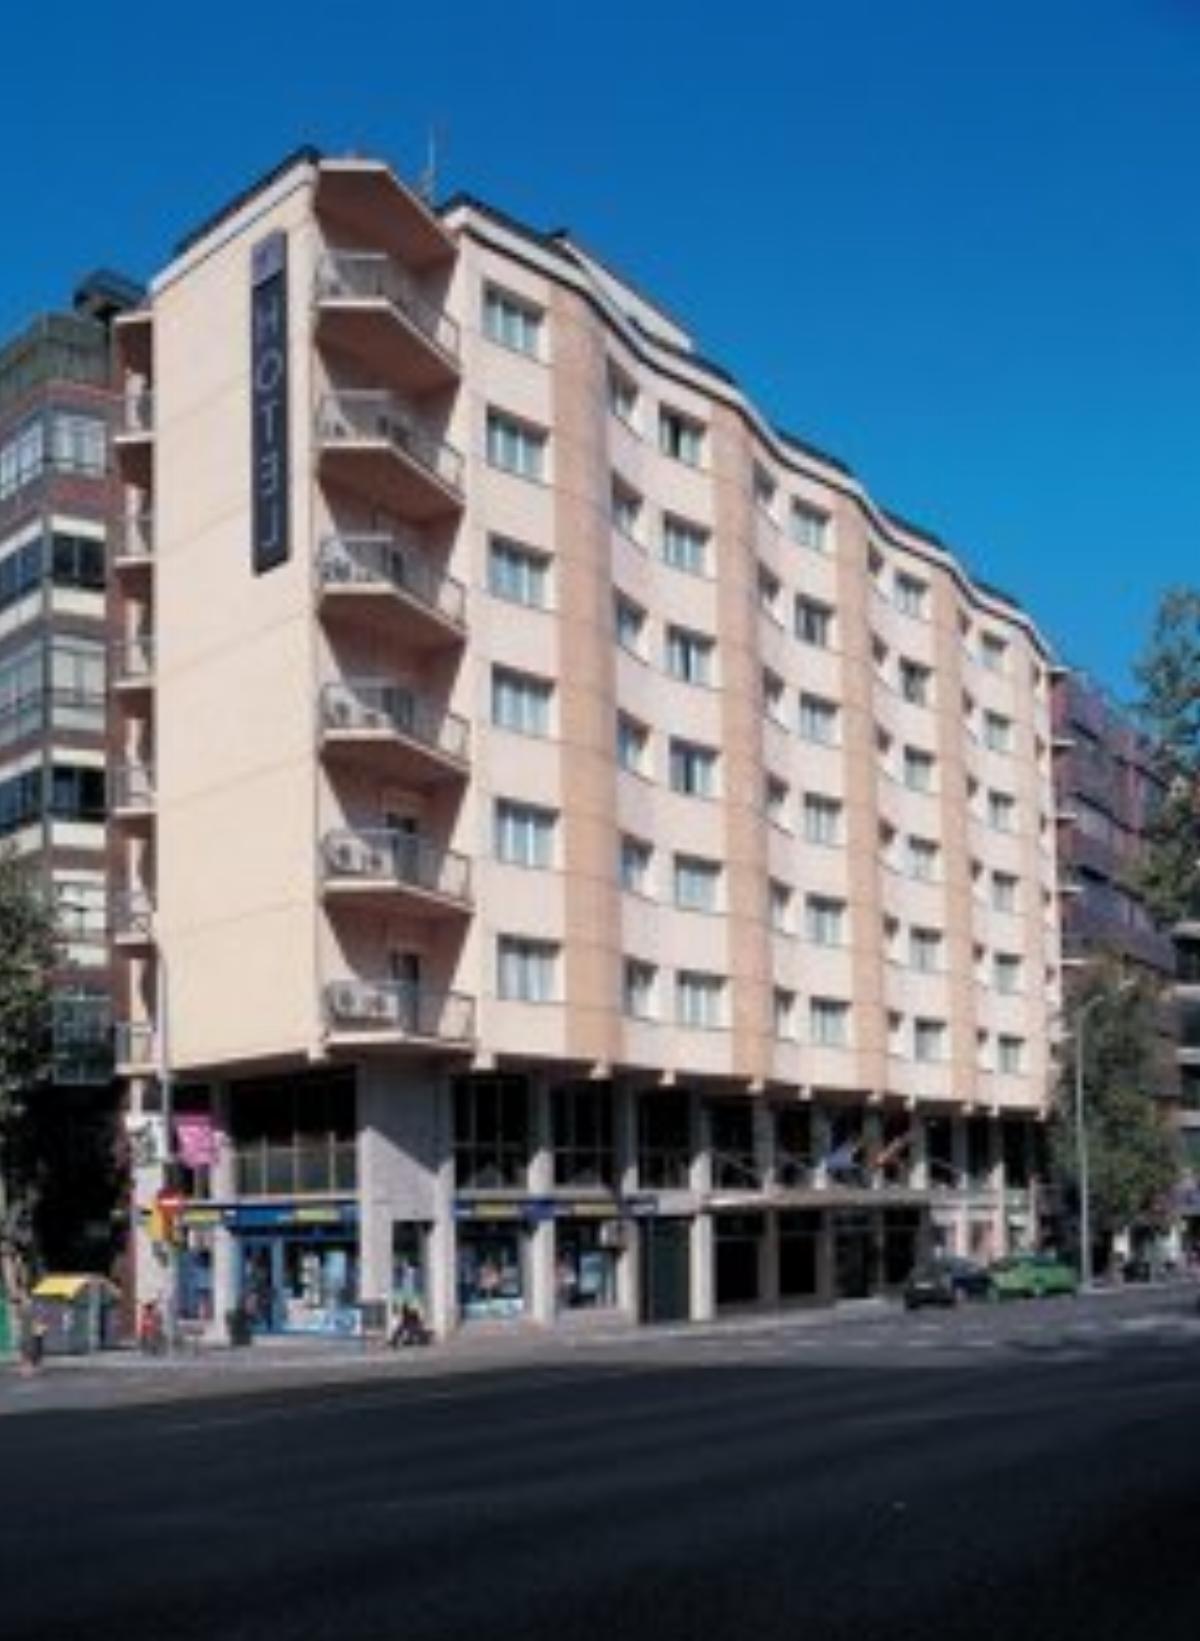 NH Cóndor Hotel Barcelona Spain